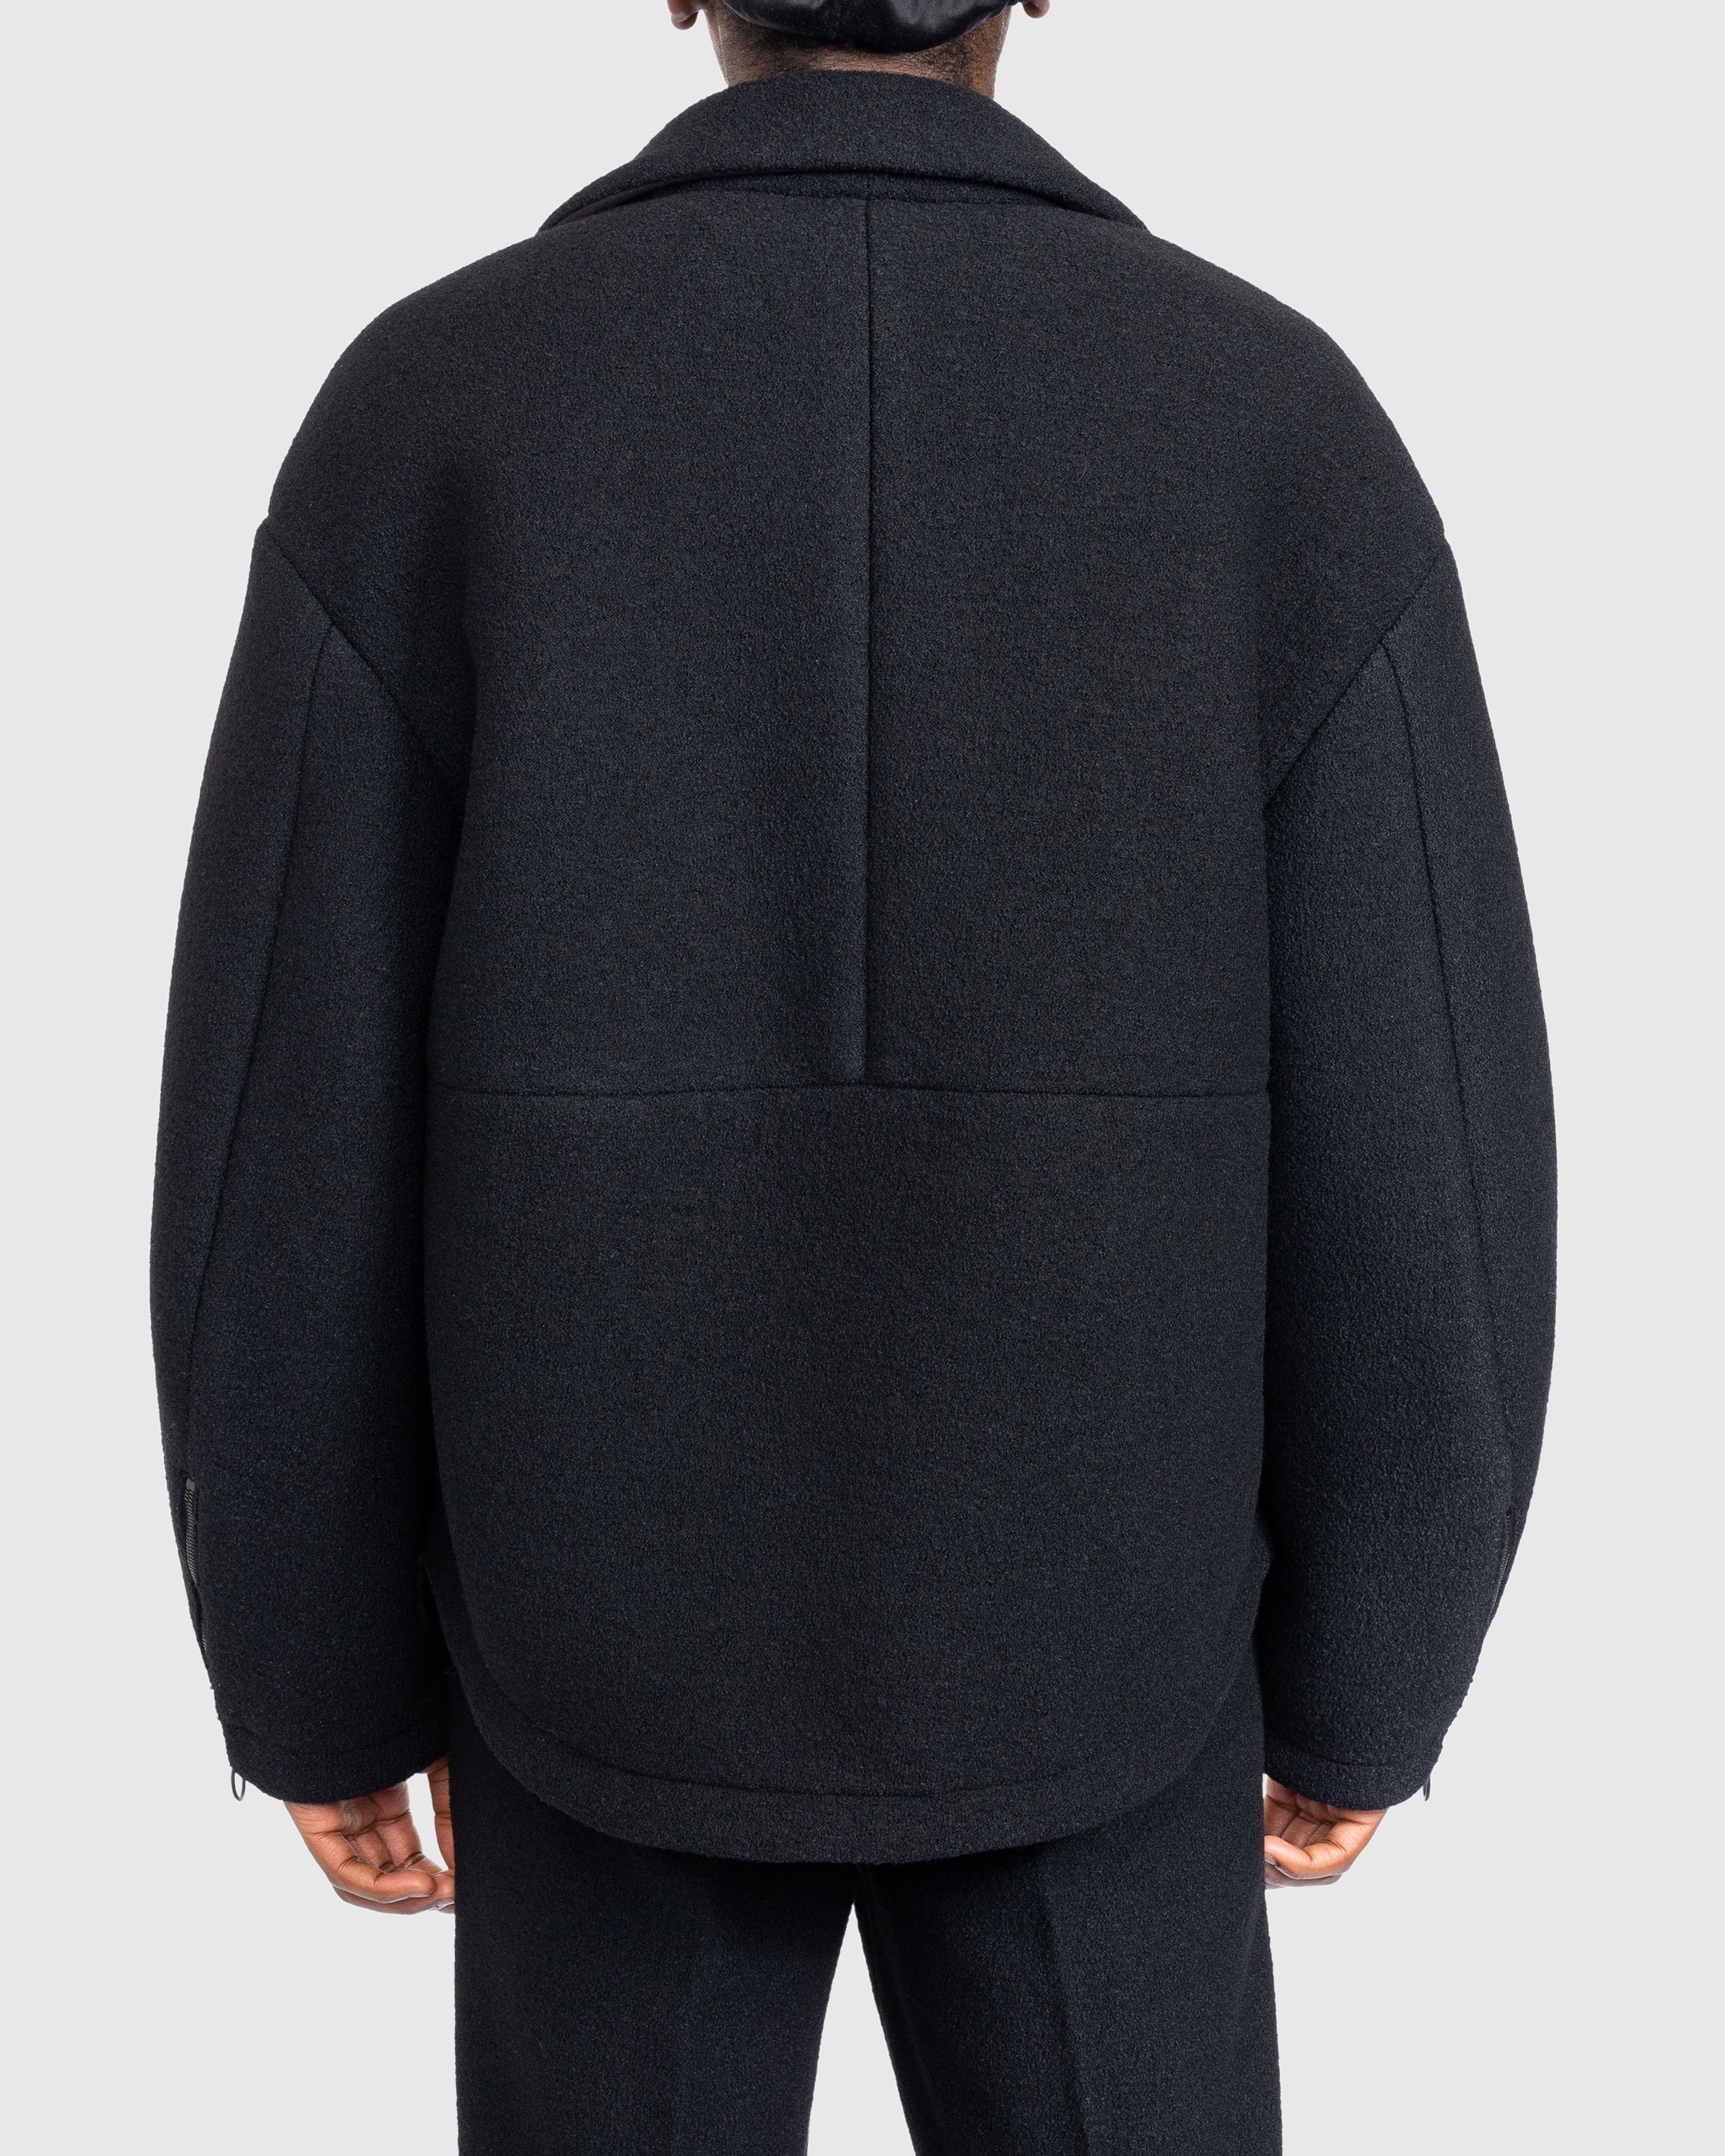 Trussardi - Boucle Jersey Scuba Jacket Black - Clothing - Black - Image 4